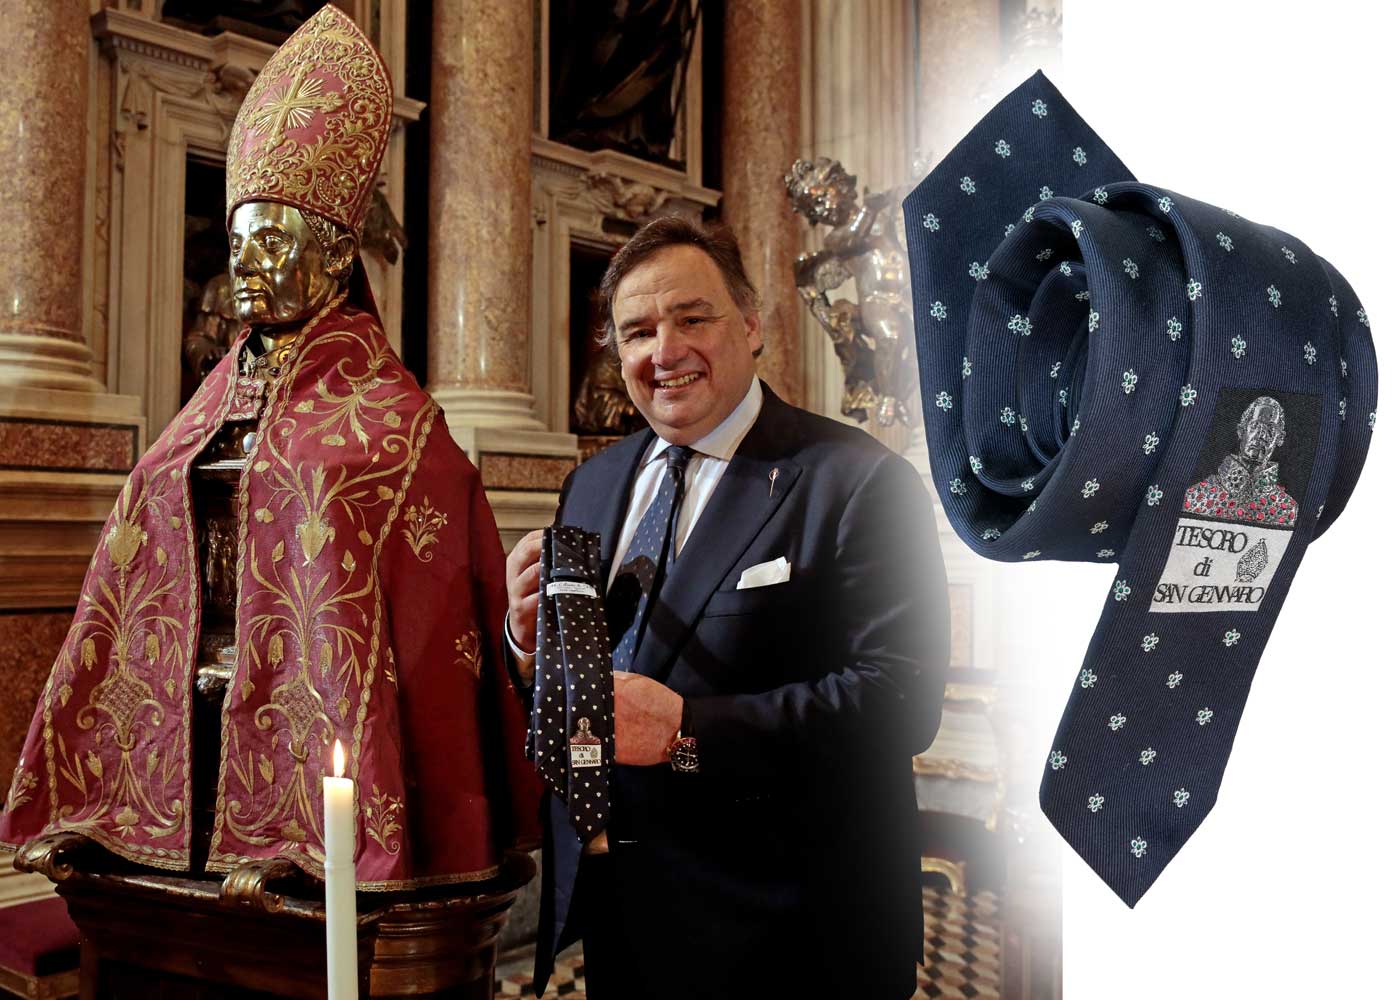 Cravatte limited edition San Gennaro